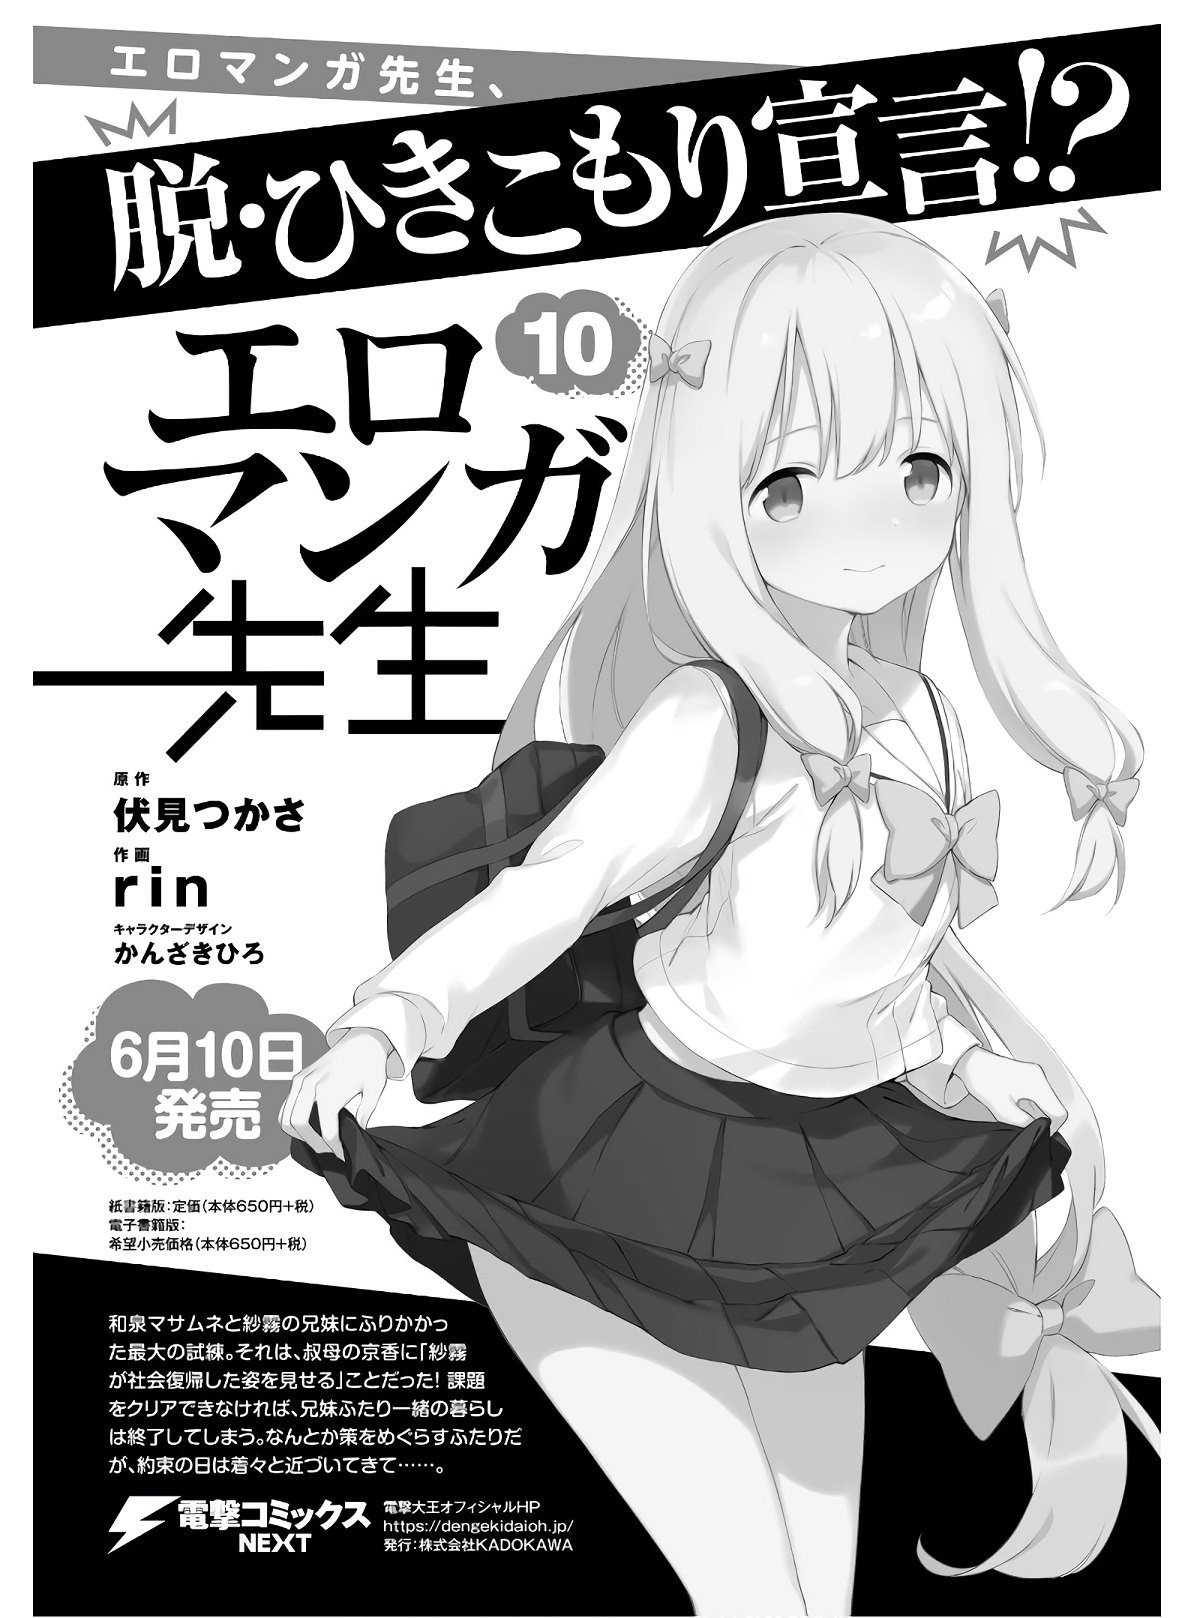 Ero Manga Sensei - Chapter 68 - Page 2